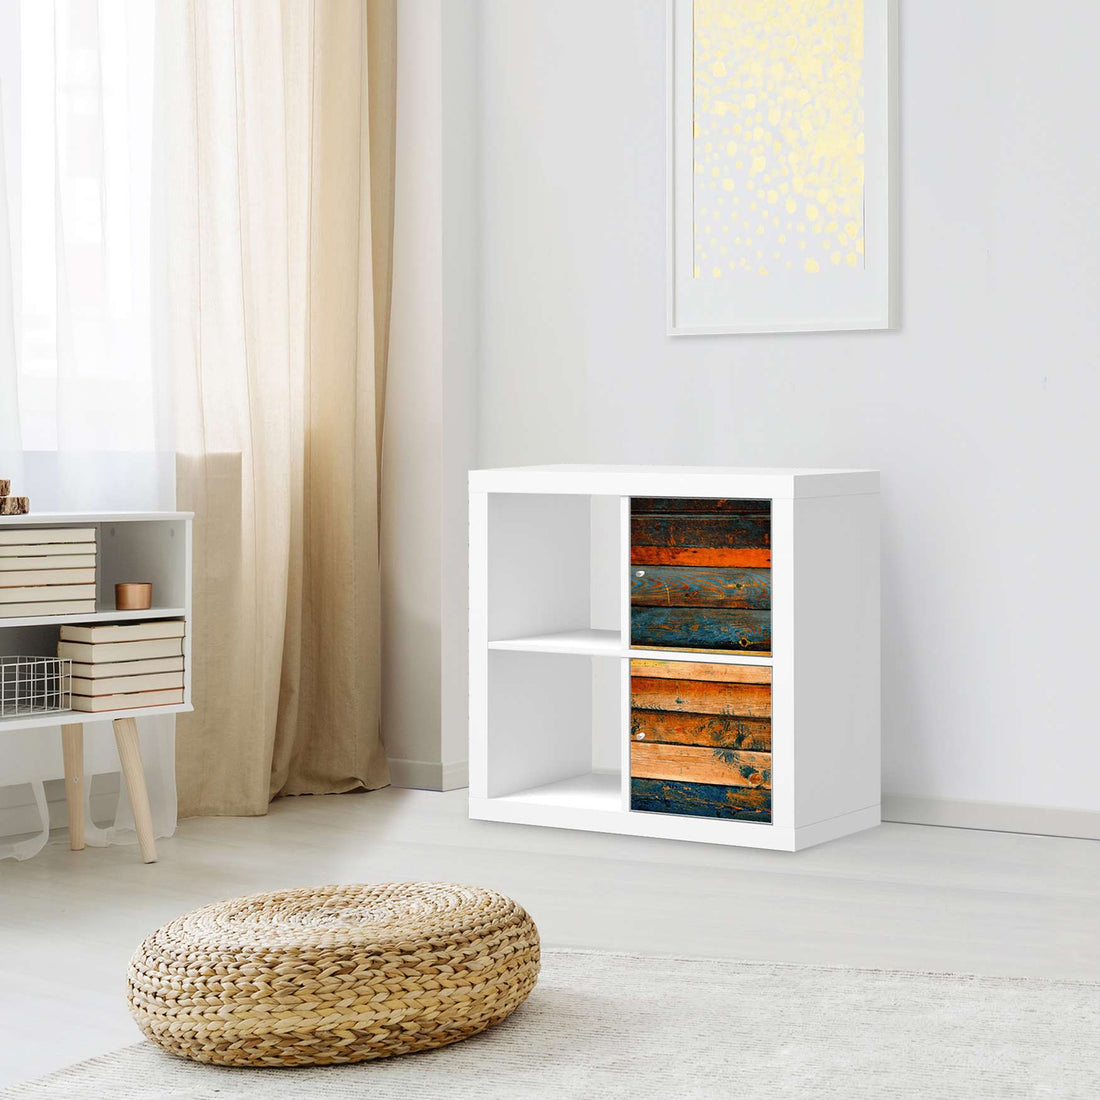 Klebefolie für Möbel Wooden - IKEA Expedit Regal 2 Türen Hoch - Wohnzimmer